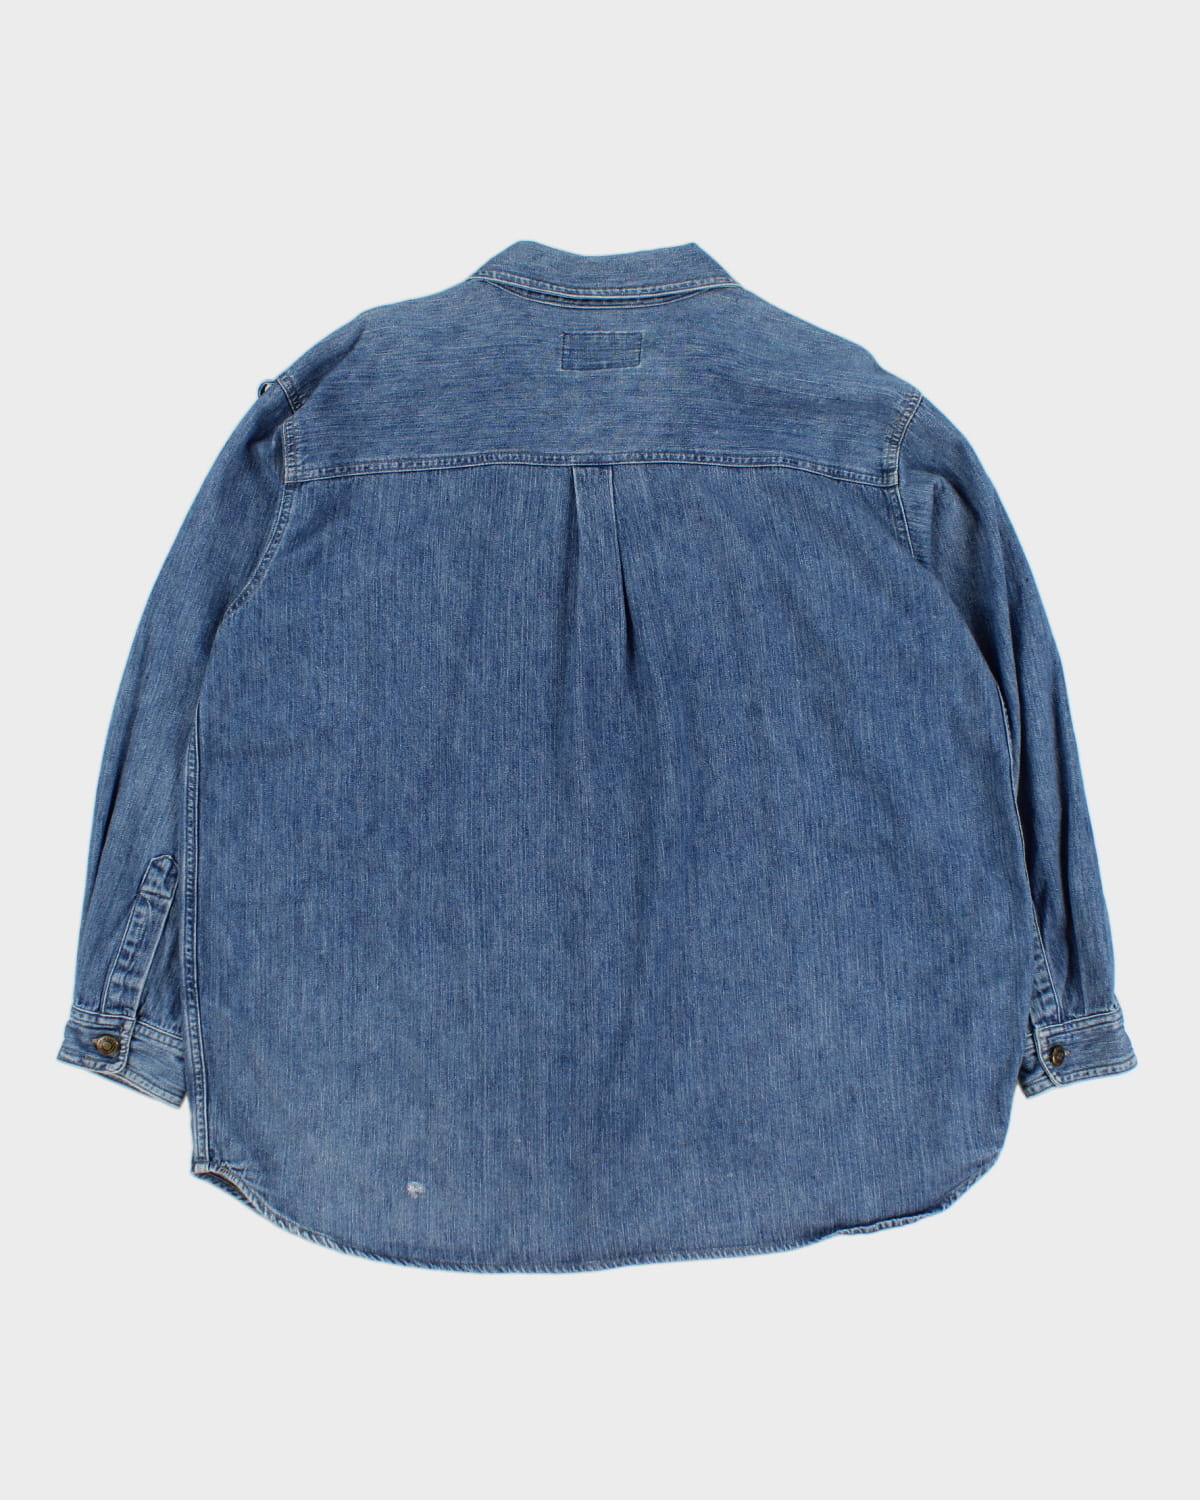 Vintage 90s Cotton Ginny Denim Zip-Up Shirt - XL